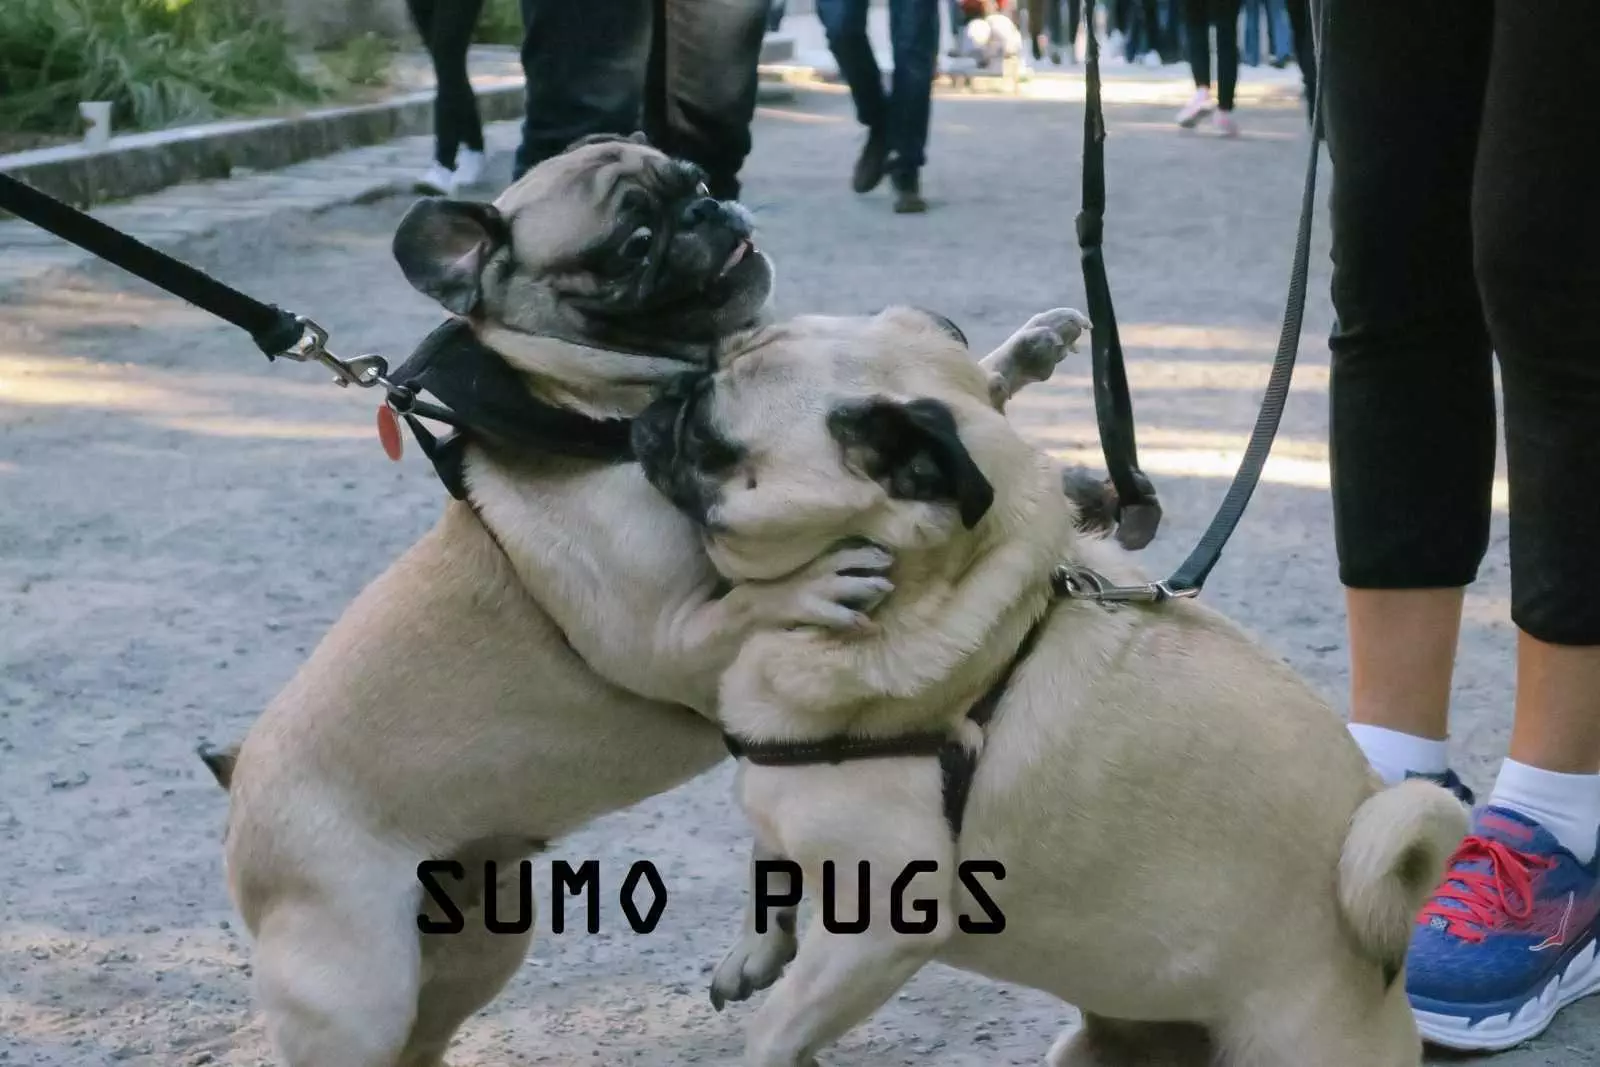 Sumo Pugs